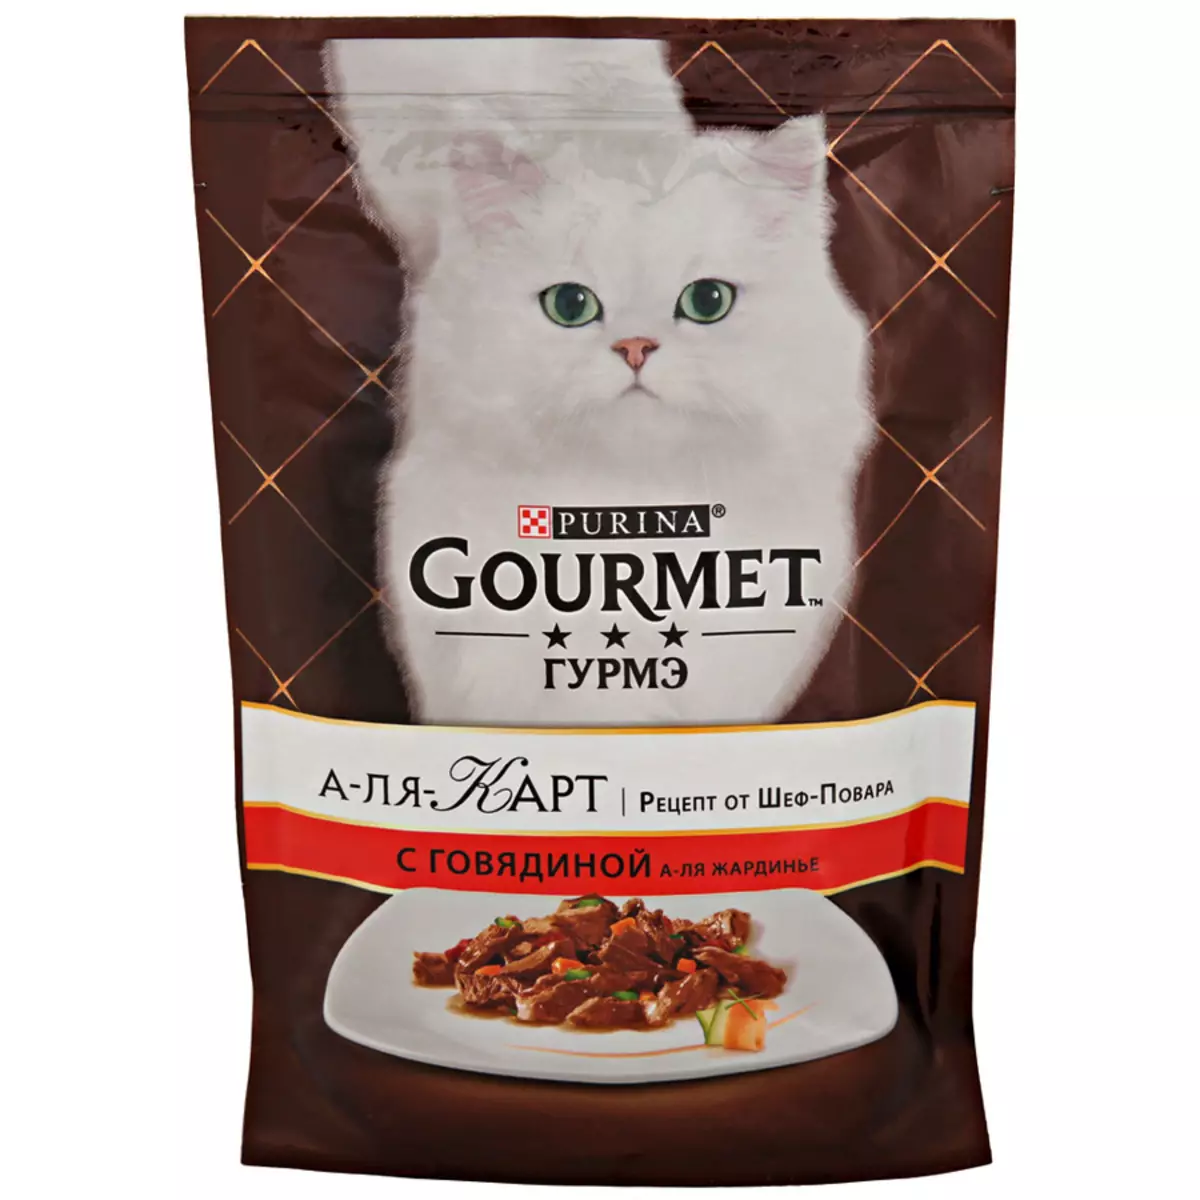 Gourmet: gat de gat i gatets de purina, patis humits i altres aliments enllaunats felins, la seva composició, comentaris 22711_40